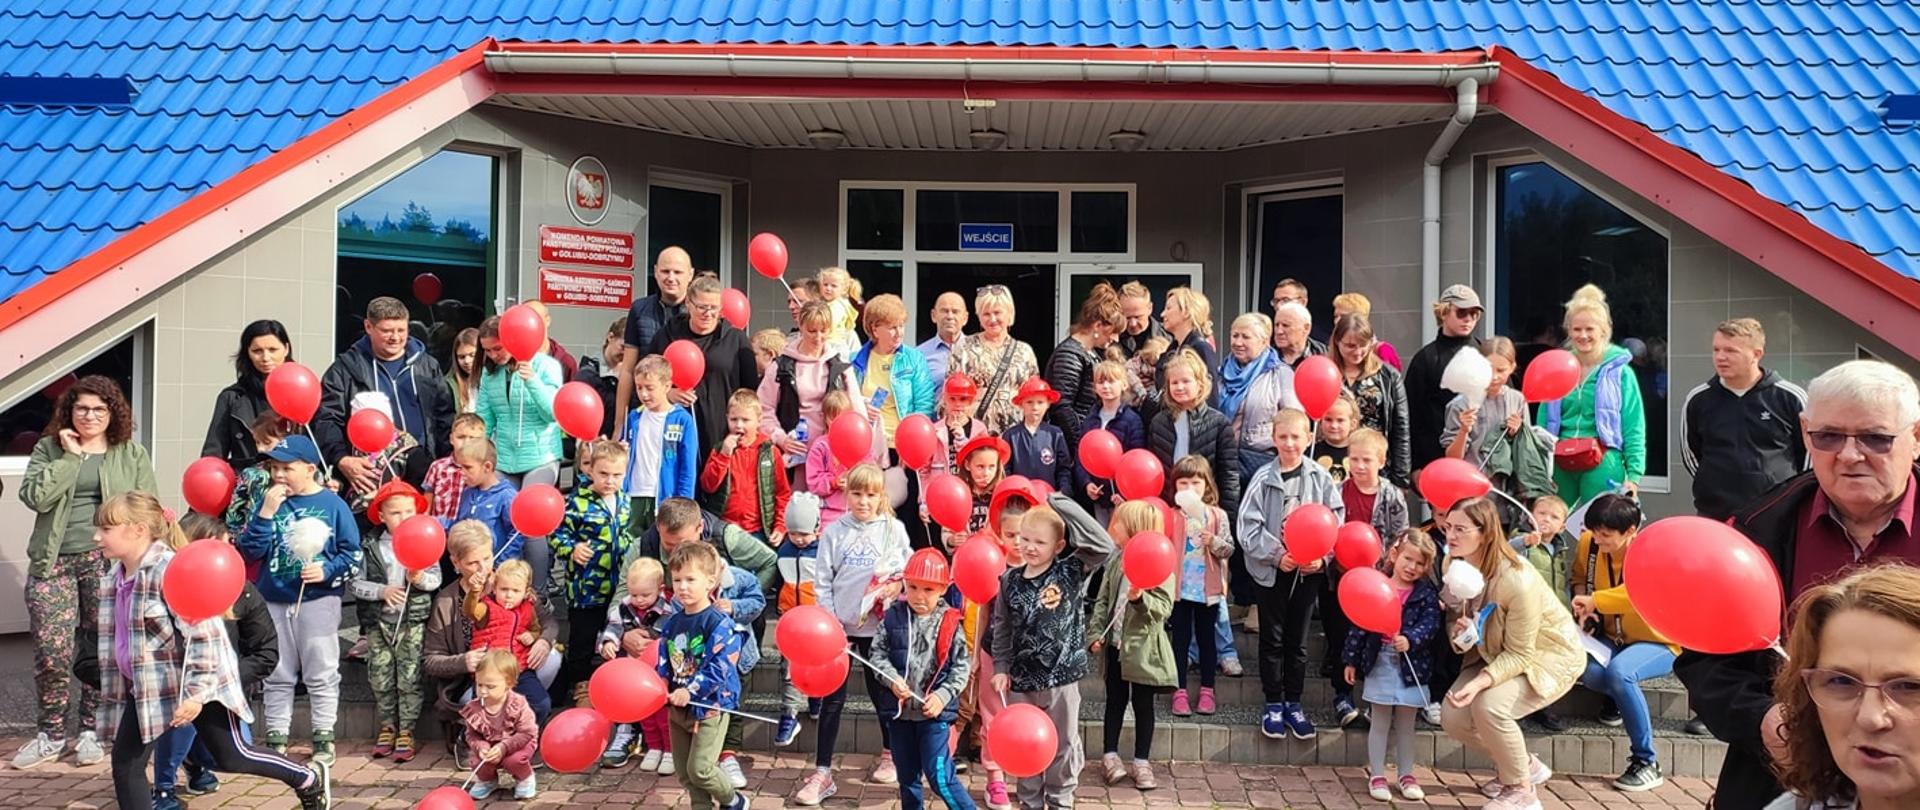 Grupa dzieci i dorosłych stoi na schodach przed budynkiem Komendy Powiatowej PSP w Golubiu-Dobrzyniu. Dzieci trzymają w dłoniach czerwone baloniki, część ma na głowie czerwone hełmy.